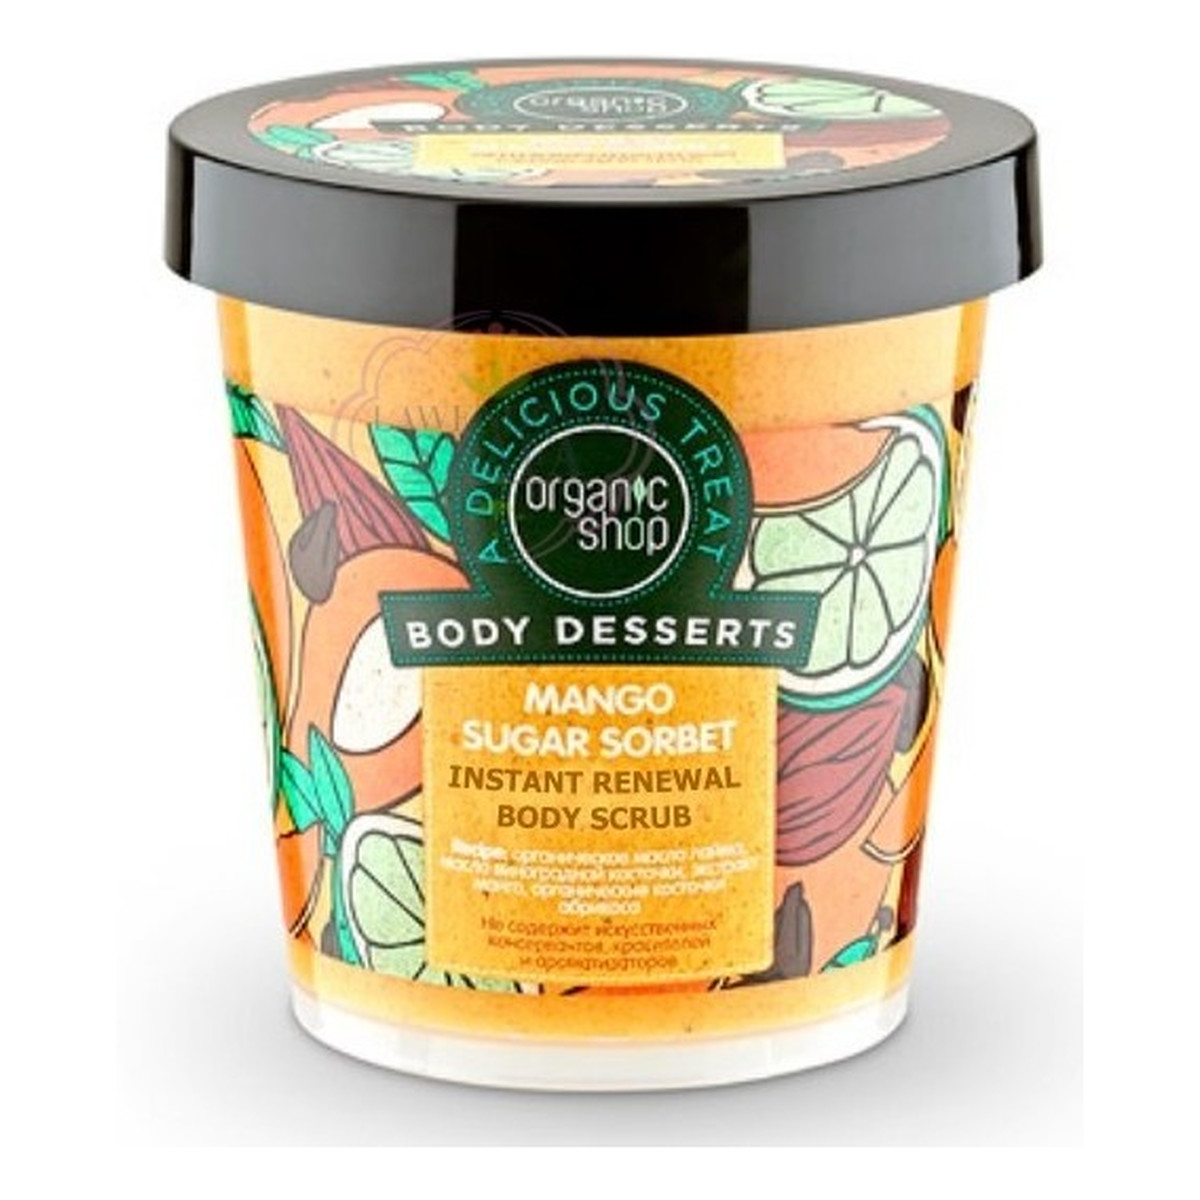 Organic Shop Body Desserts Mango Cukrowy Sorbet Odnawiający Scrub Do Ciała 450ml